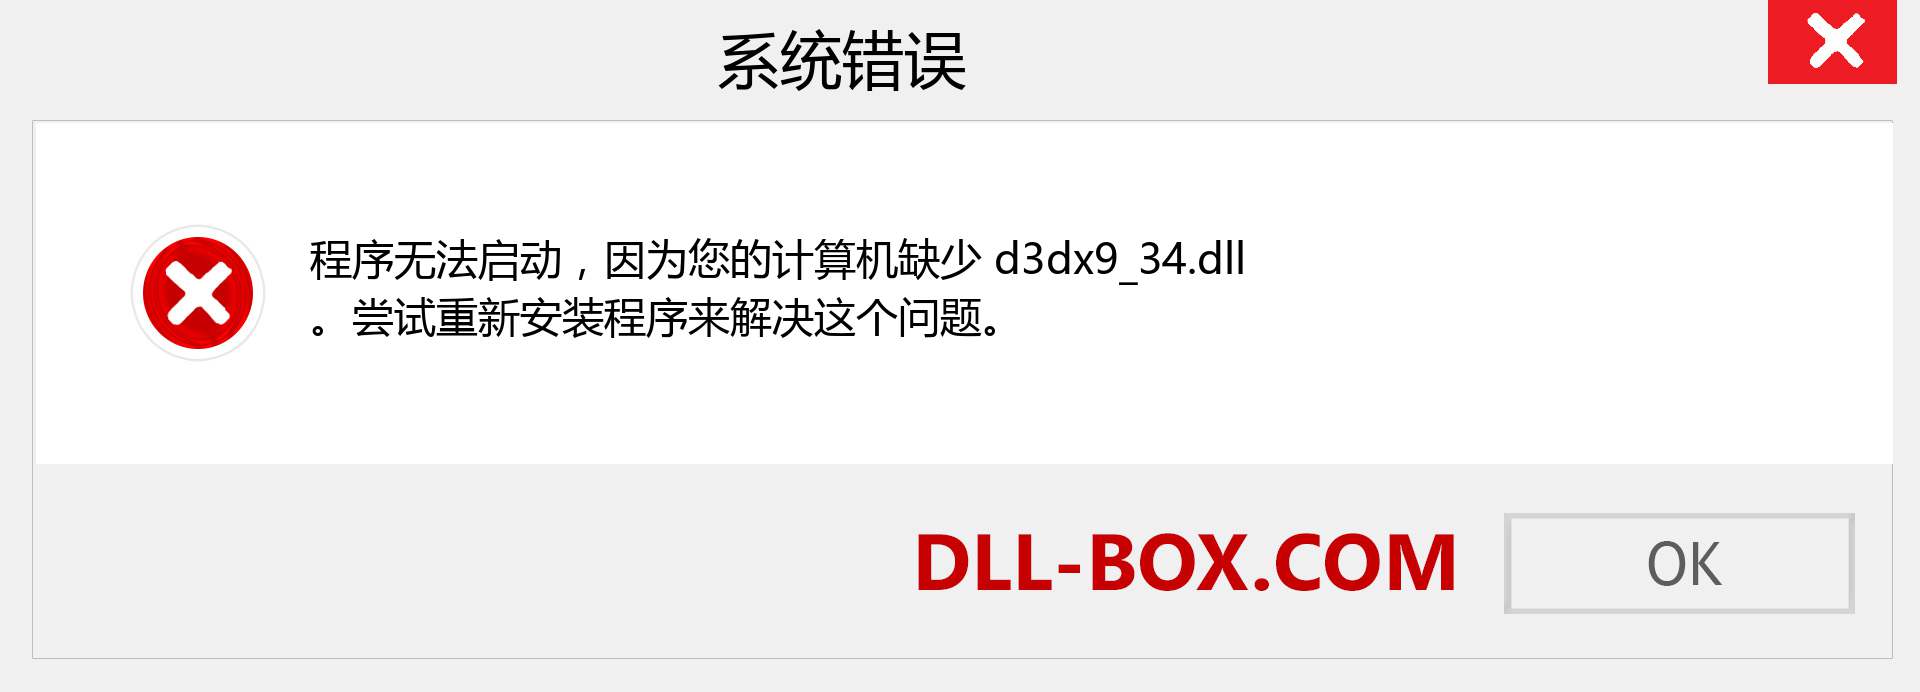 d3dx9_34.dll 文件丢失？。 适用于 Windows 7、8、10 的下载 - 修复 Windows、照片、图像上的 d3dx9_34 dll 丢失错误